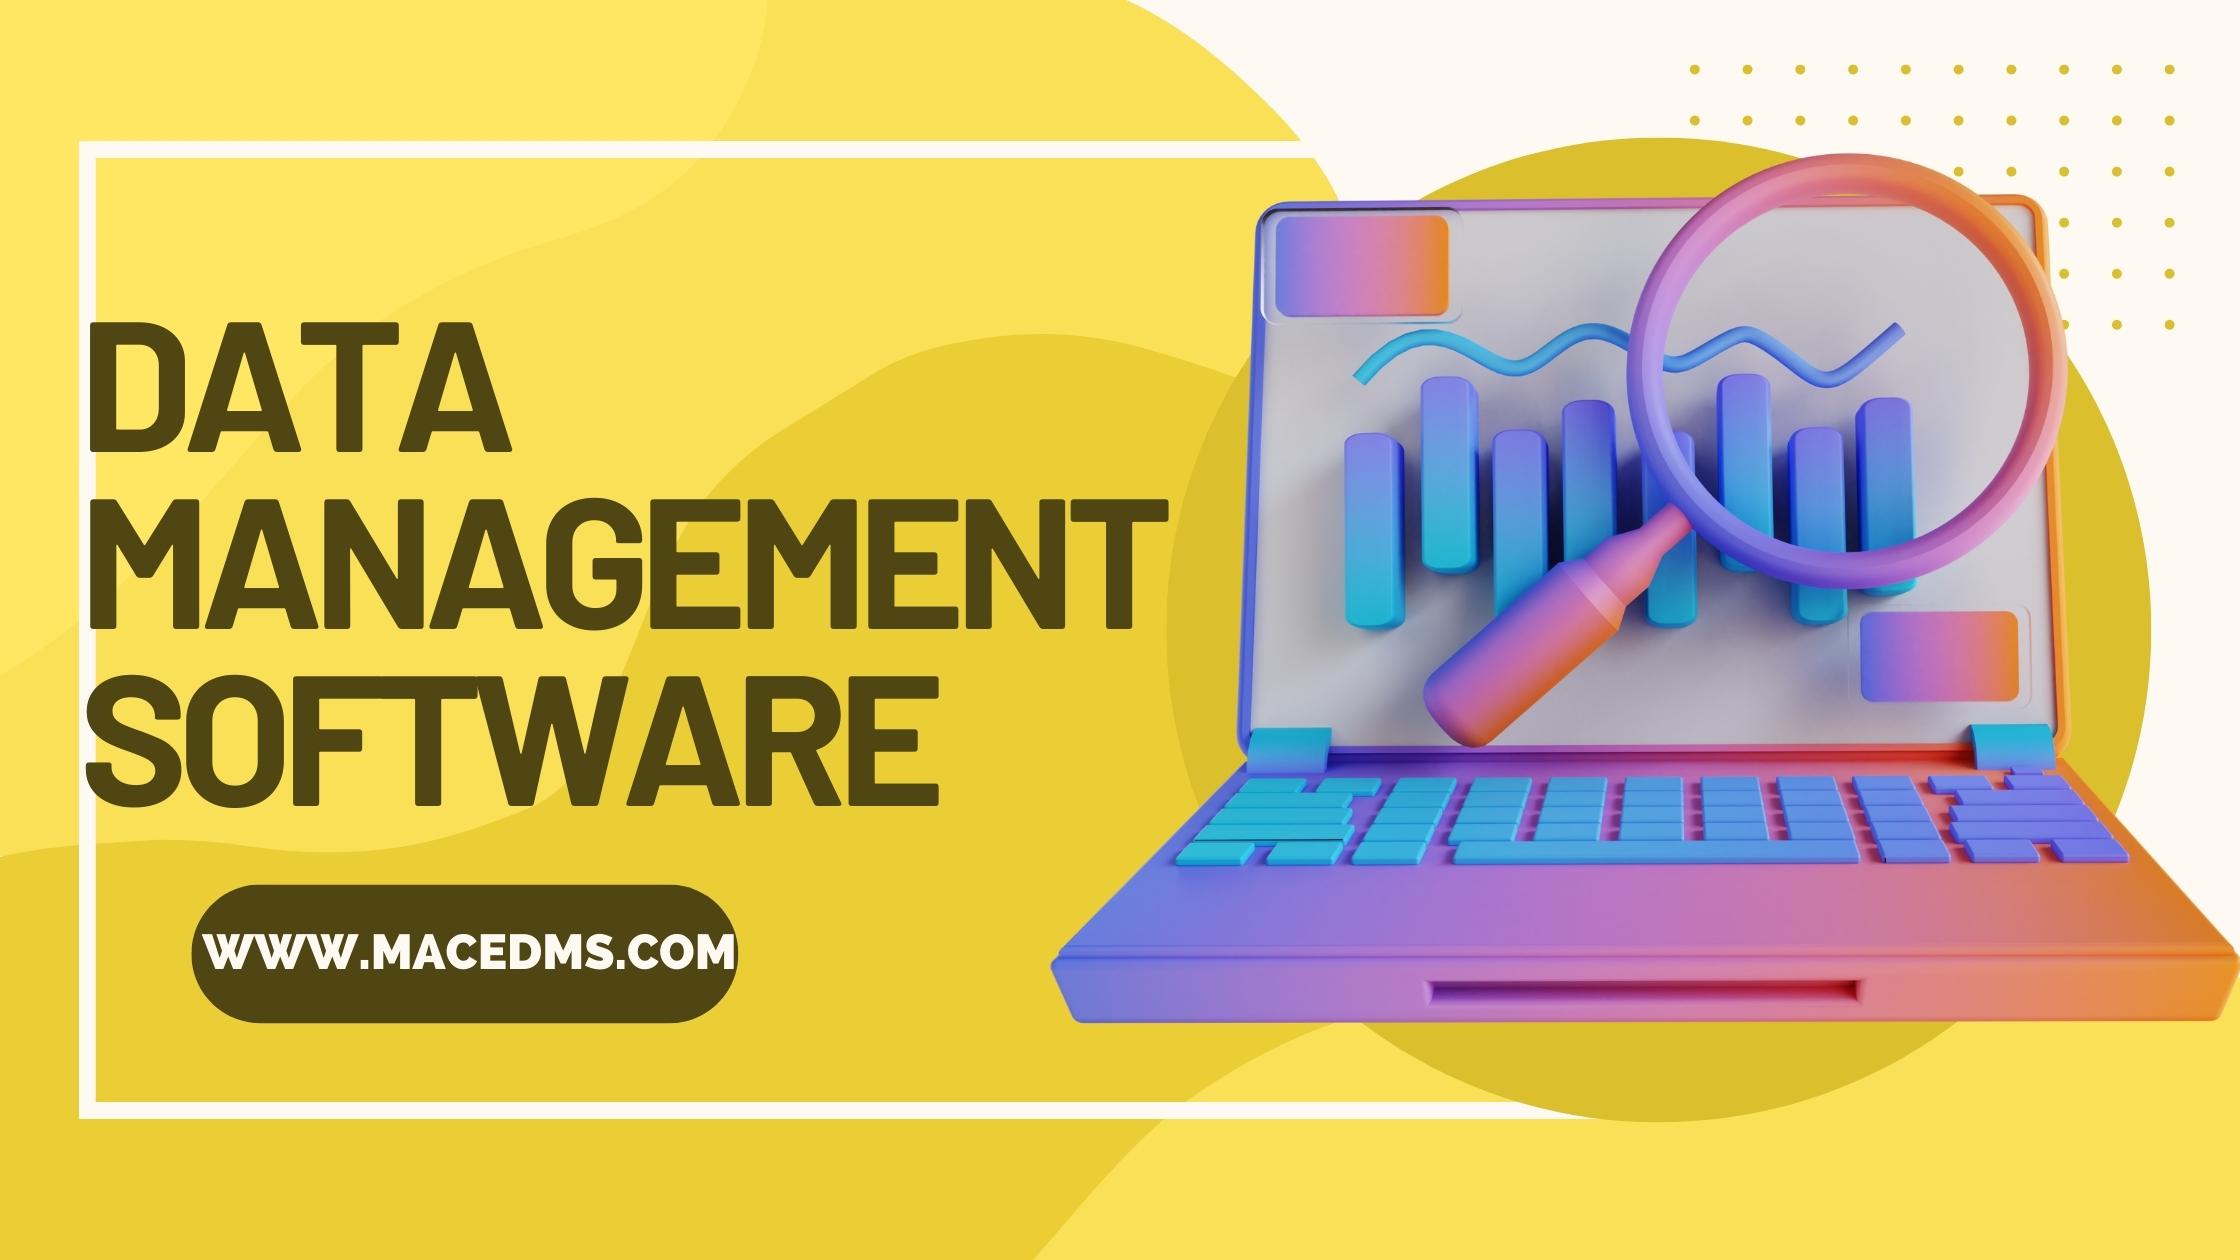 Data Management Software